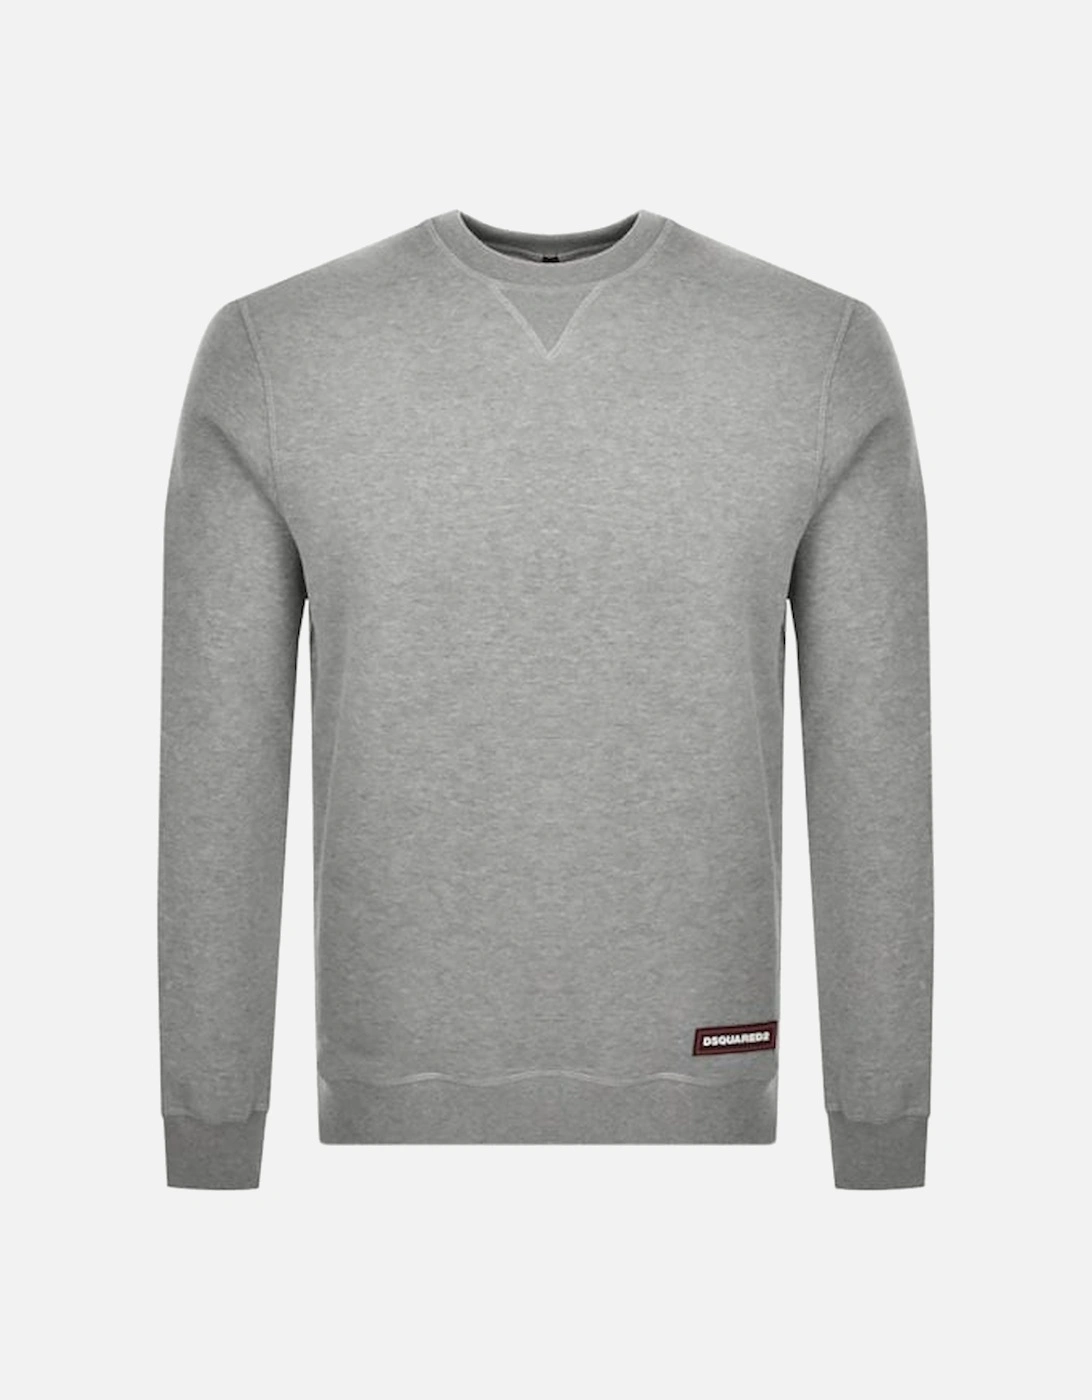 Sweatshirt Grey, 2 of 1